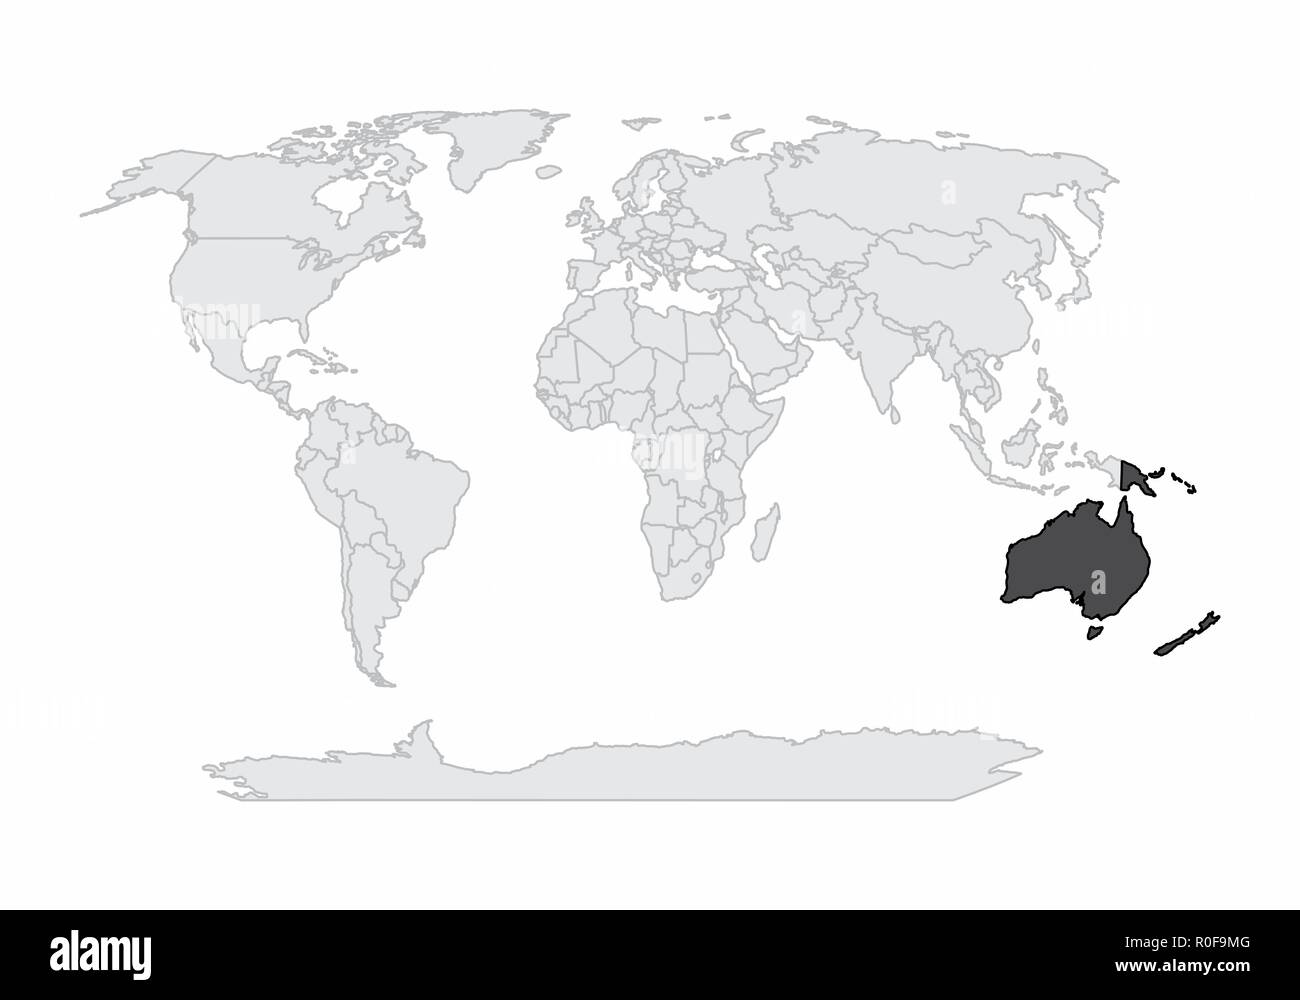 La carte du monde illustration avec l'Océanie à mettre en surbrillance Illustration de Vecteur